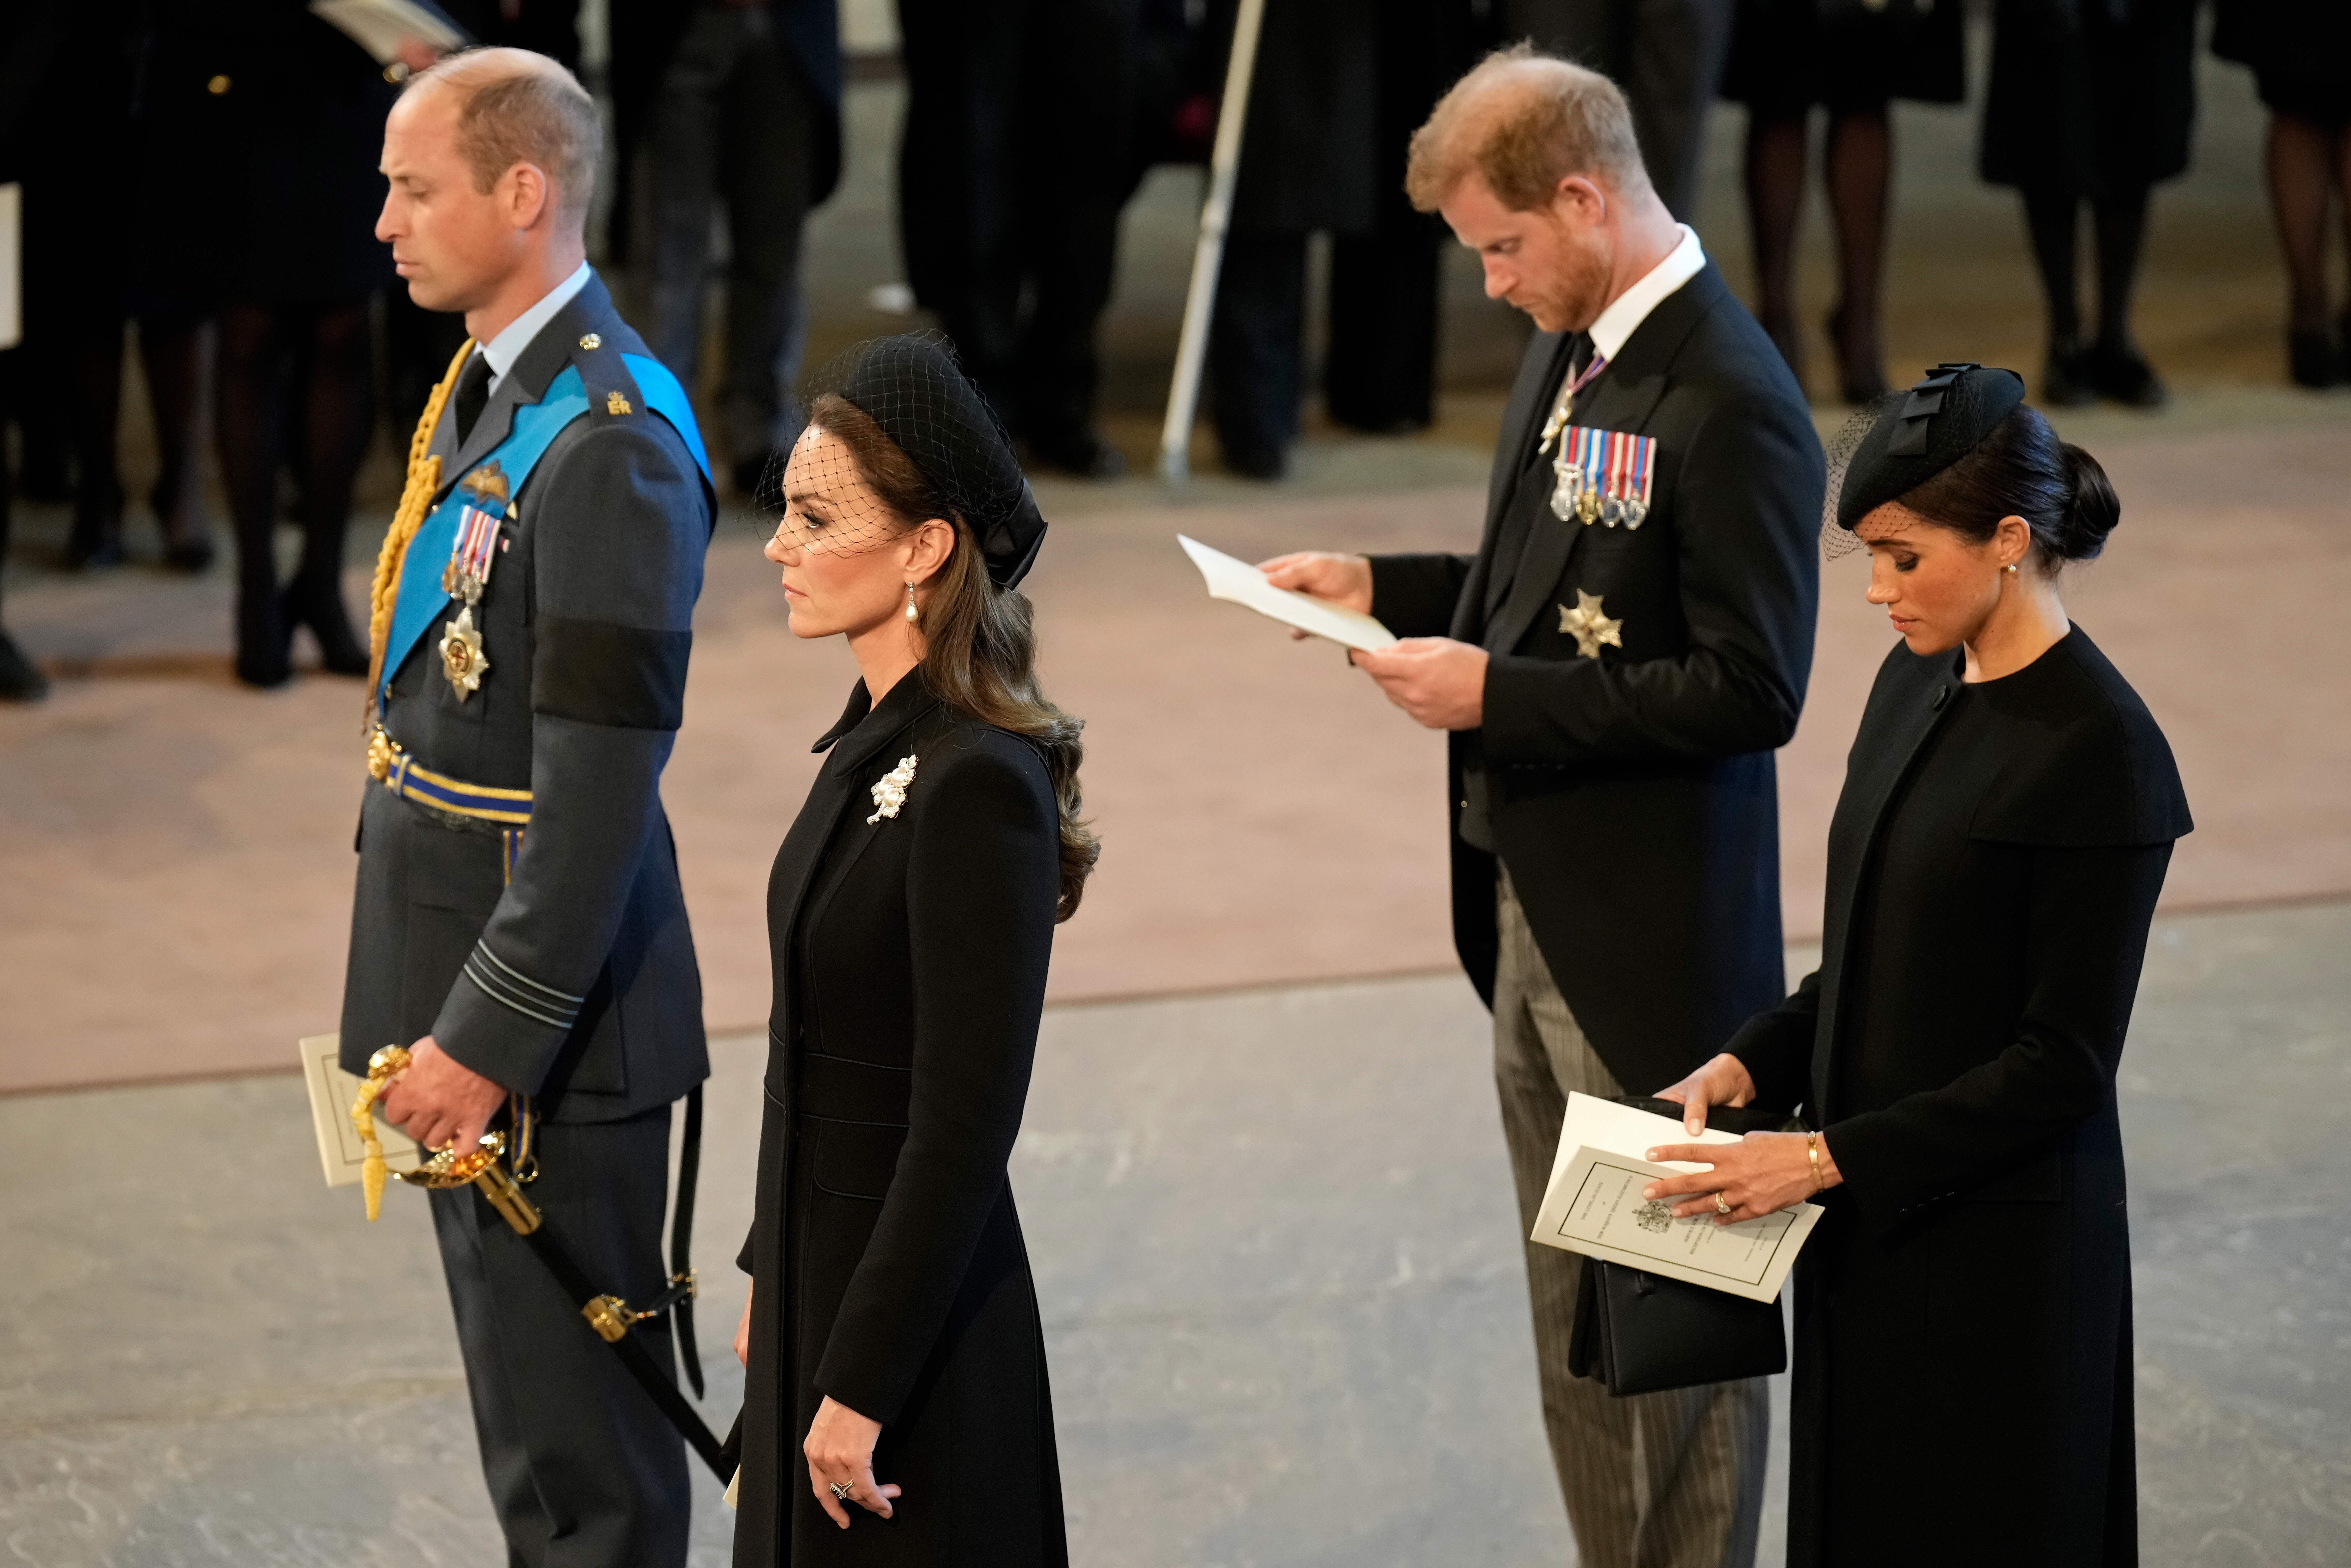 Le prince William, la princesse Catherine, Meghan Markle et le prince Harry lors de la cérémonie d'intronisation de la reine Élisabeth II, le 14 septembre 2022 à Londres, en Angleterre | Source : Getty Images